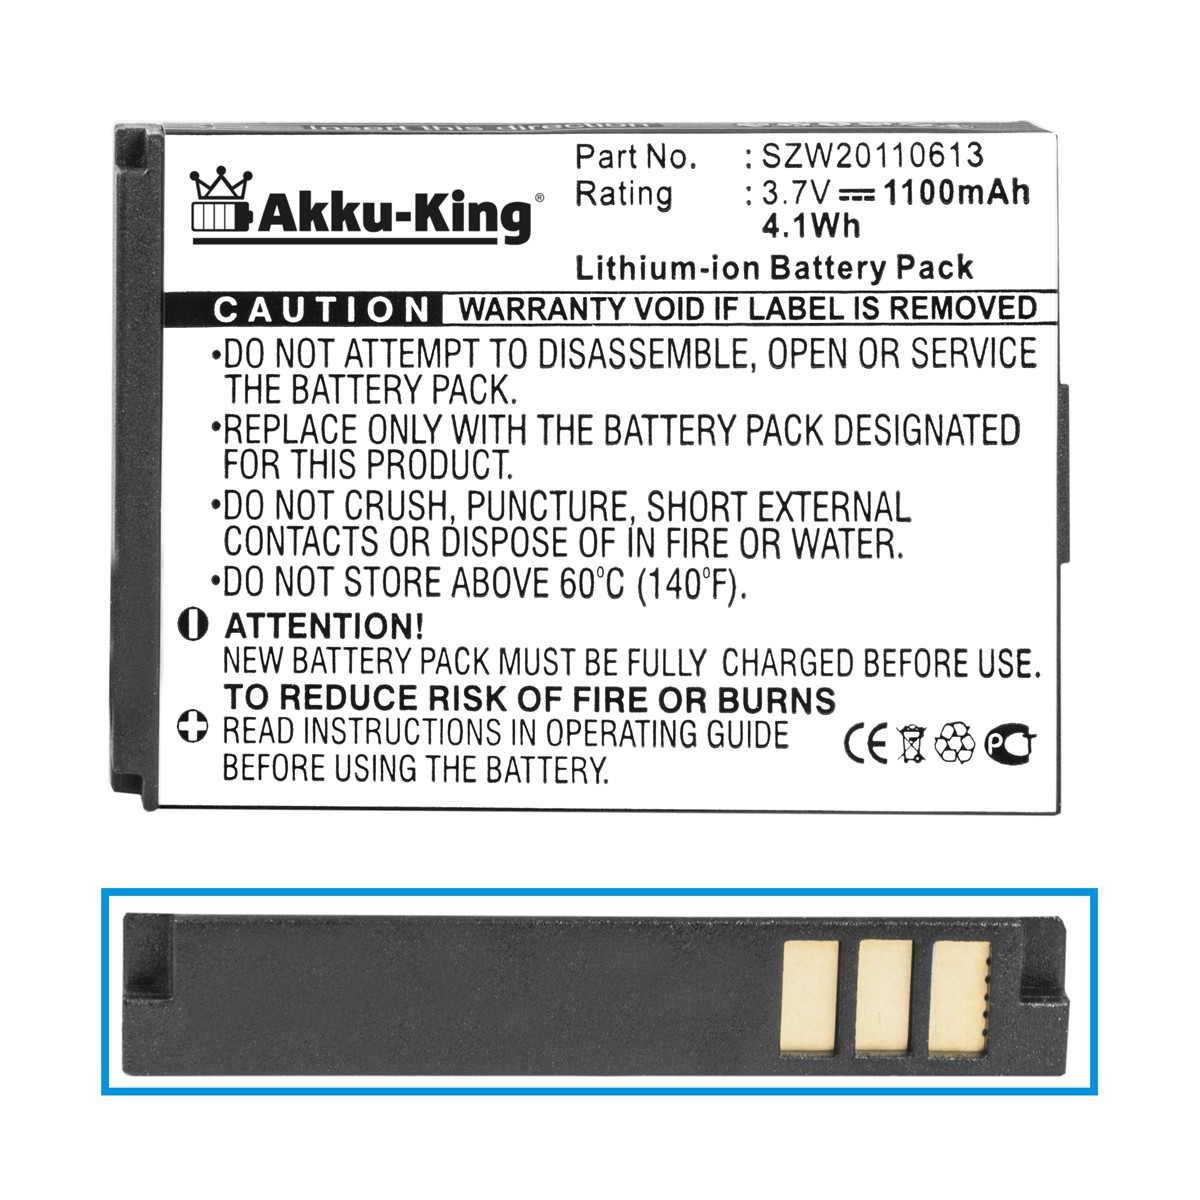 AKKU-KING Akku kompatibel mit Olympia 3.7 1100mAh SZW20110613 Handy-Akku, Li-Ion Volt